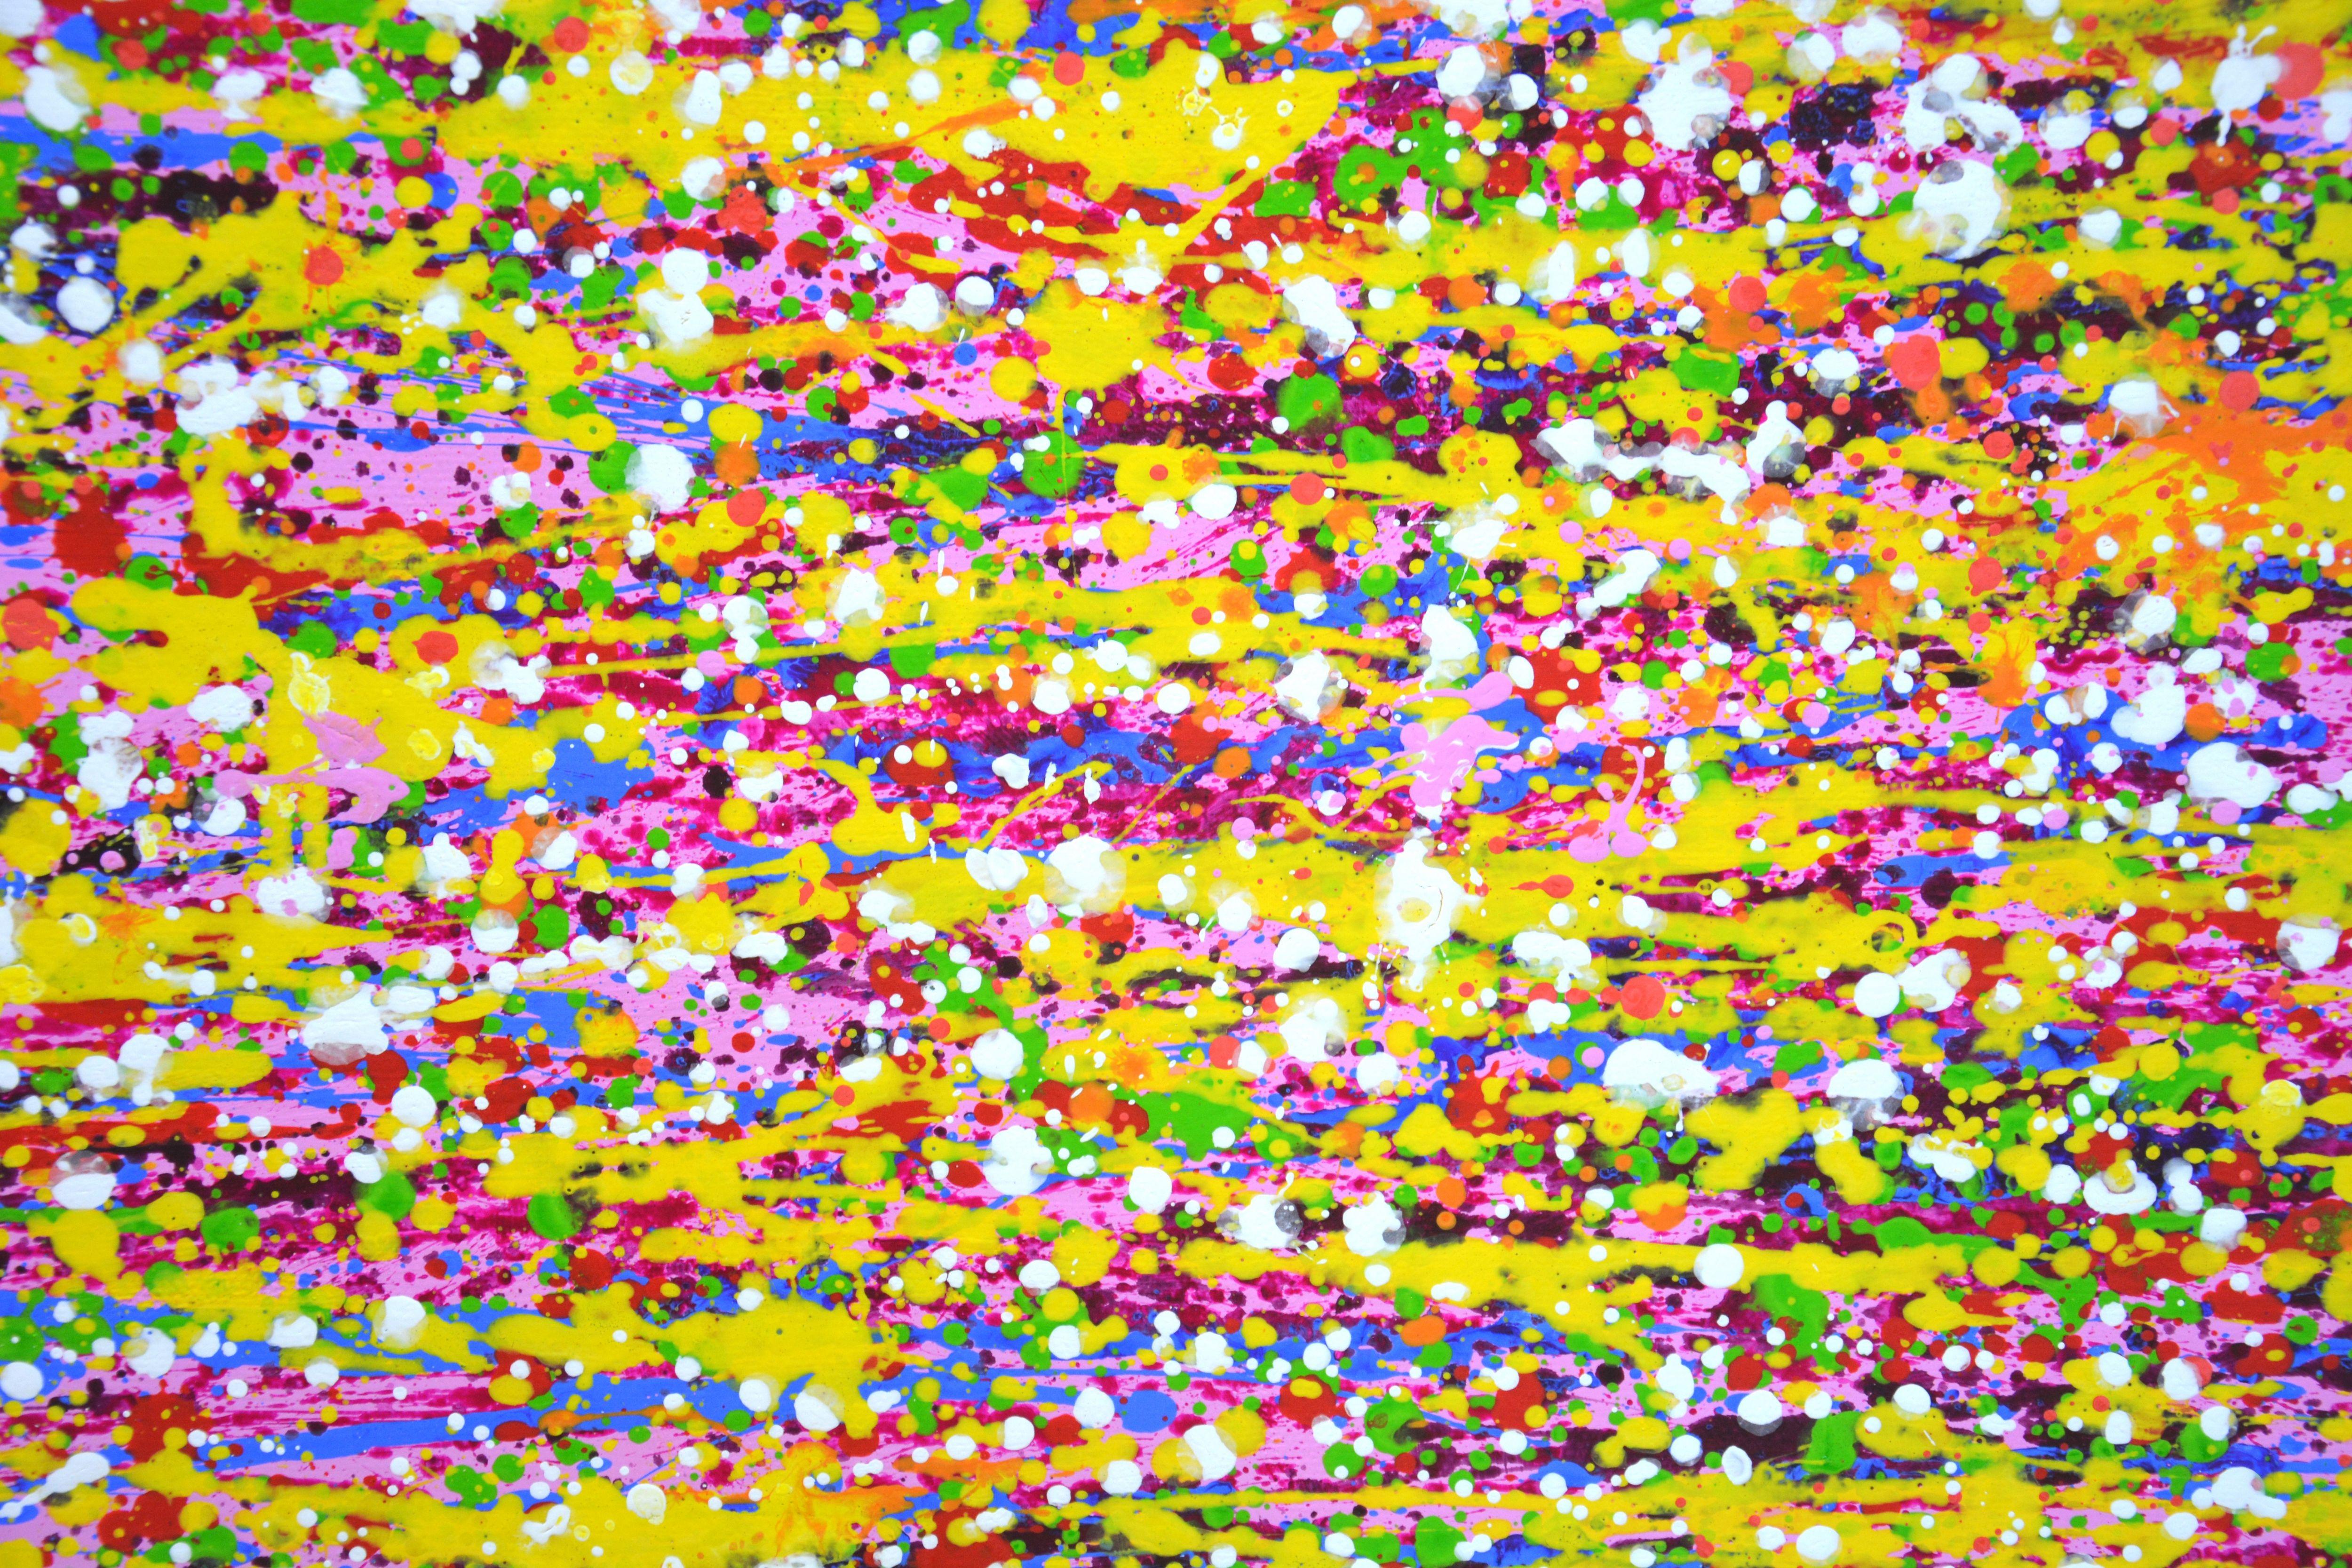 Lebendiger Ausdruck 2. Ein ausdrucksstarkes, modernes, abstraktes Gemälde, das aus Farbtropfen und -spritzern besteht, die glitzern und schimmern! Die Farben überlagern sich und entsprechen auch verschiedenen Punkten. Viele farbige Tropfen, rosa,